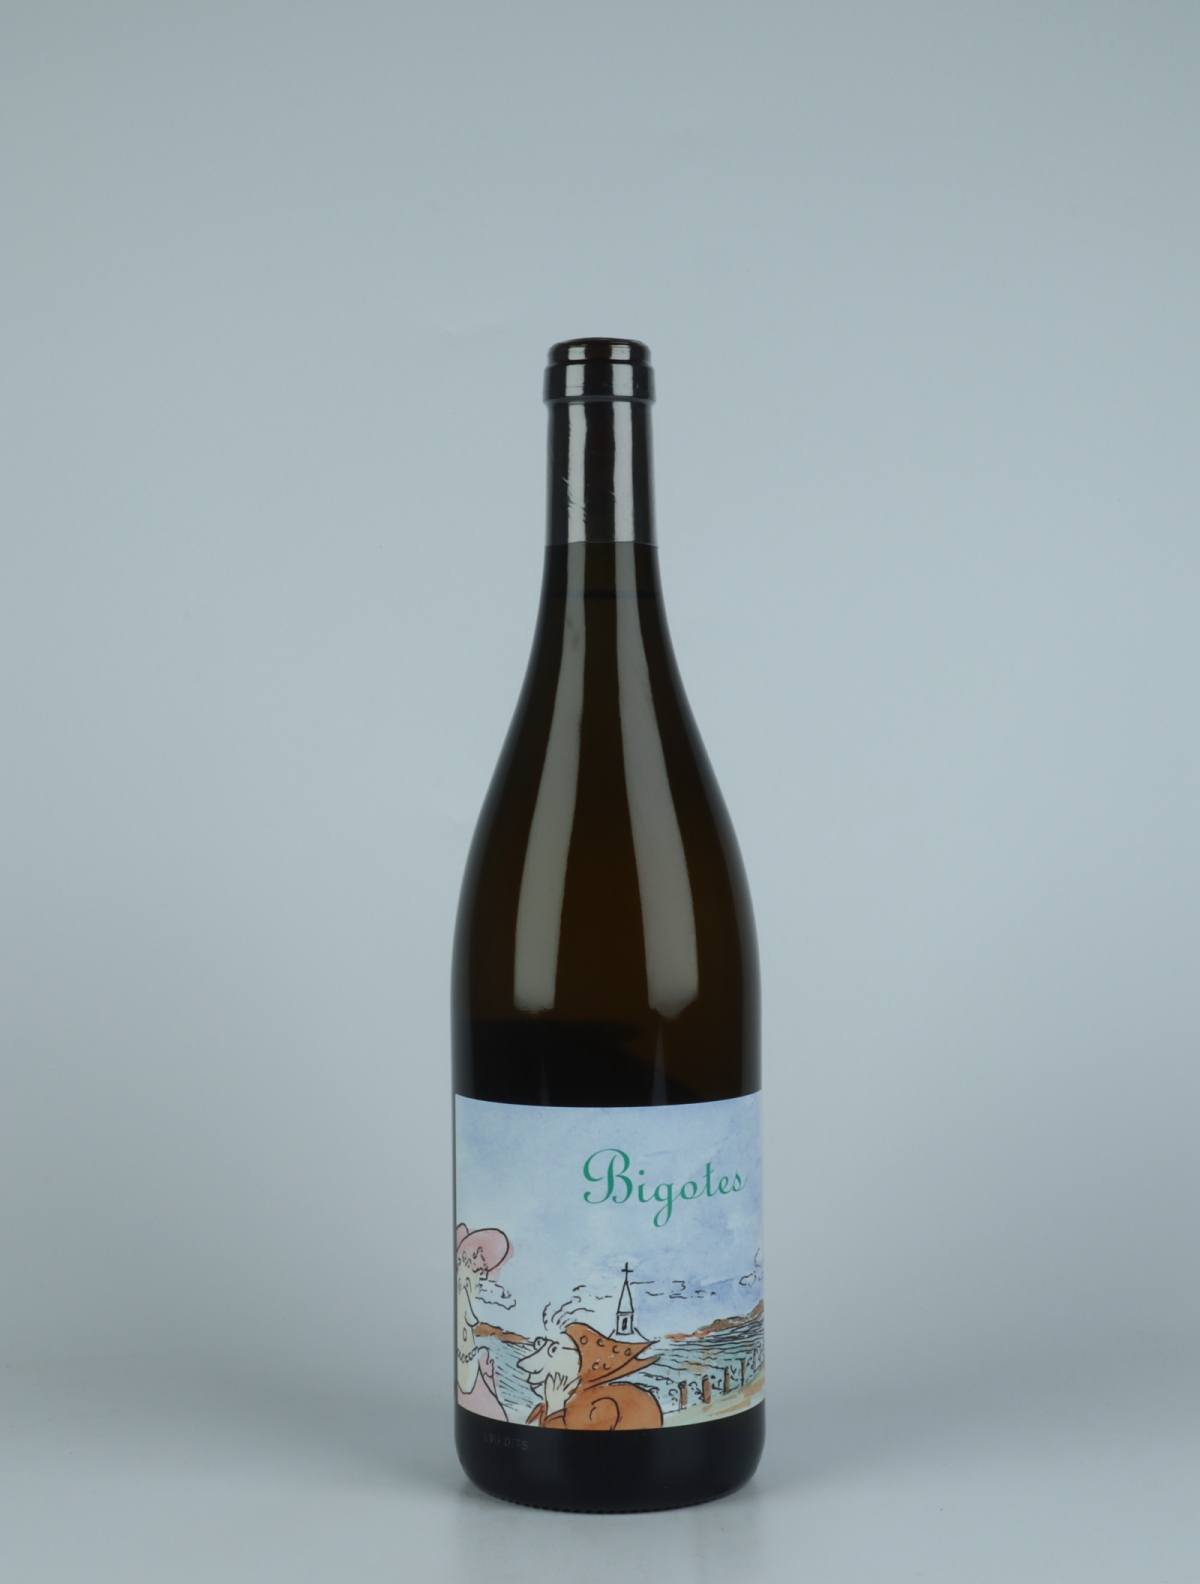 En flaske 2018 Bourgogne Blanc - Bigotes - Qvevris Hvidvin fra Frédéric Cossard, Bourgogne i Frankrig